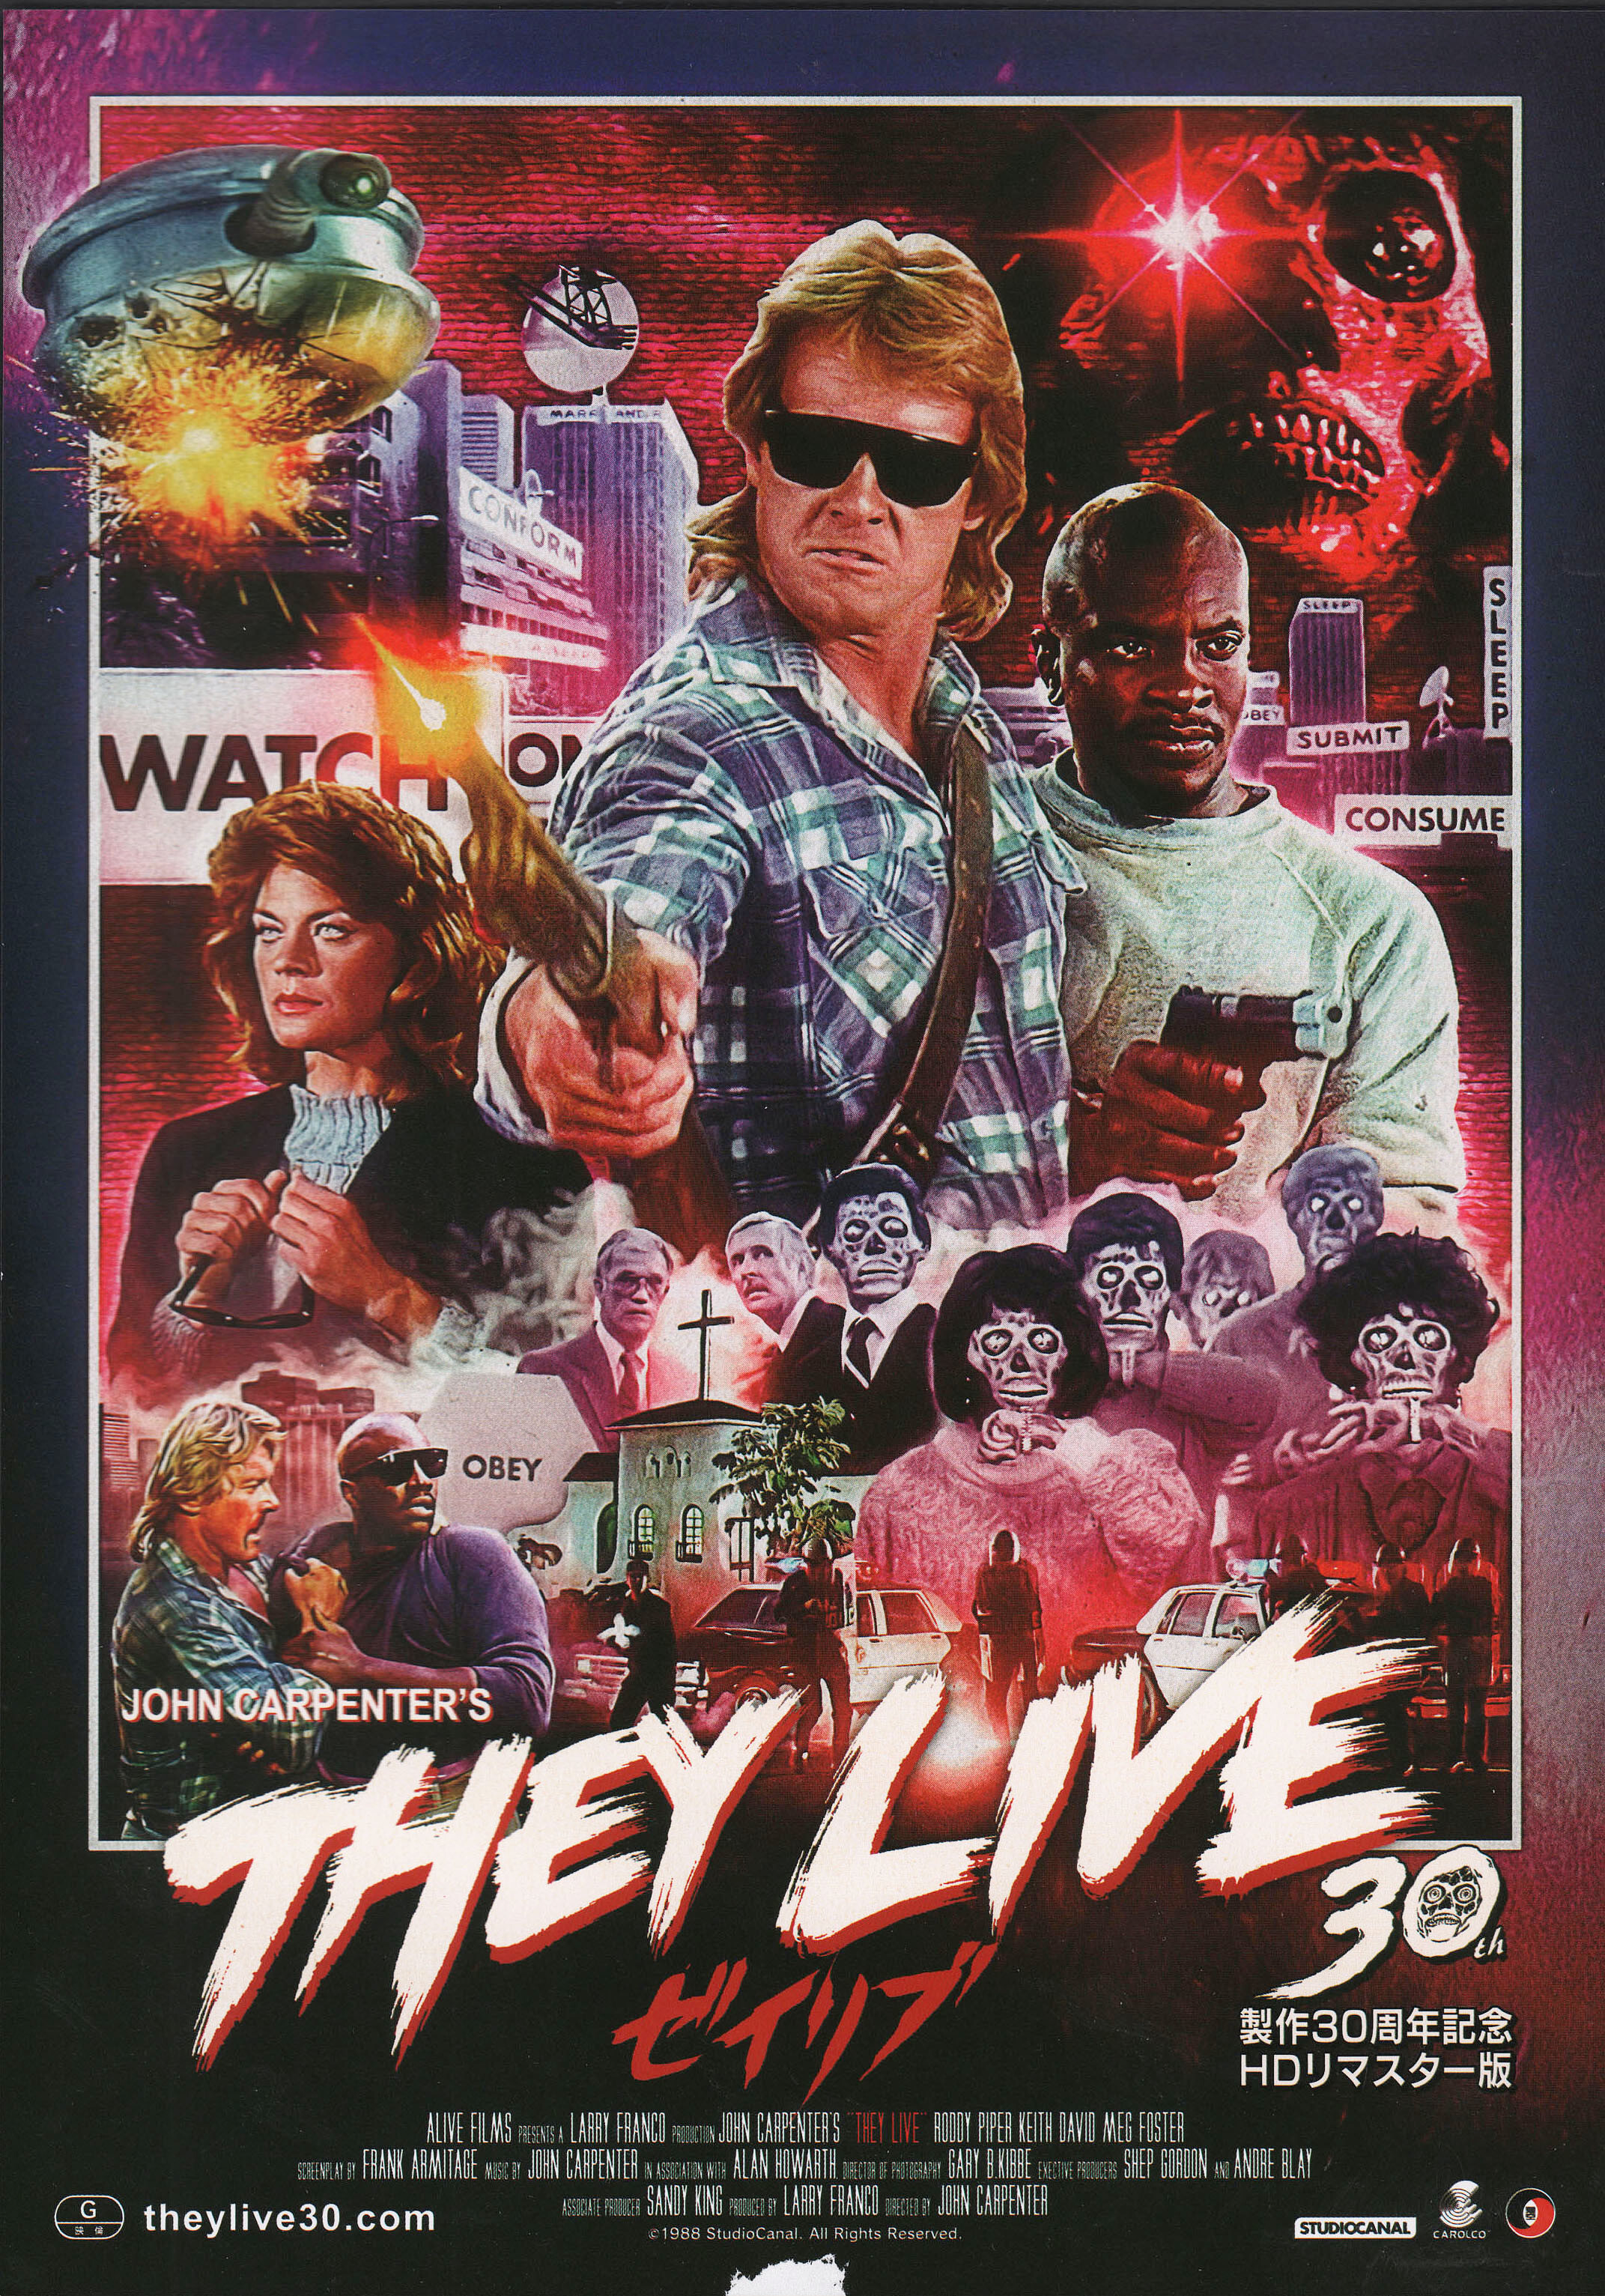 Чужие среди нас (They Live, 1988), режиссёр Джон Карпентер, японский постер к фильму (ужасы, 2018)